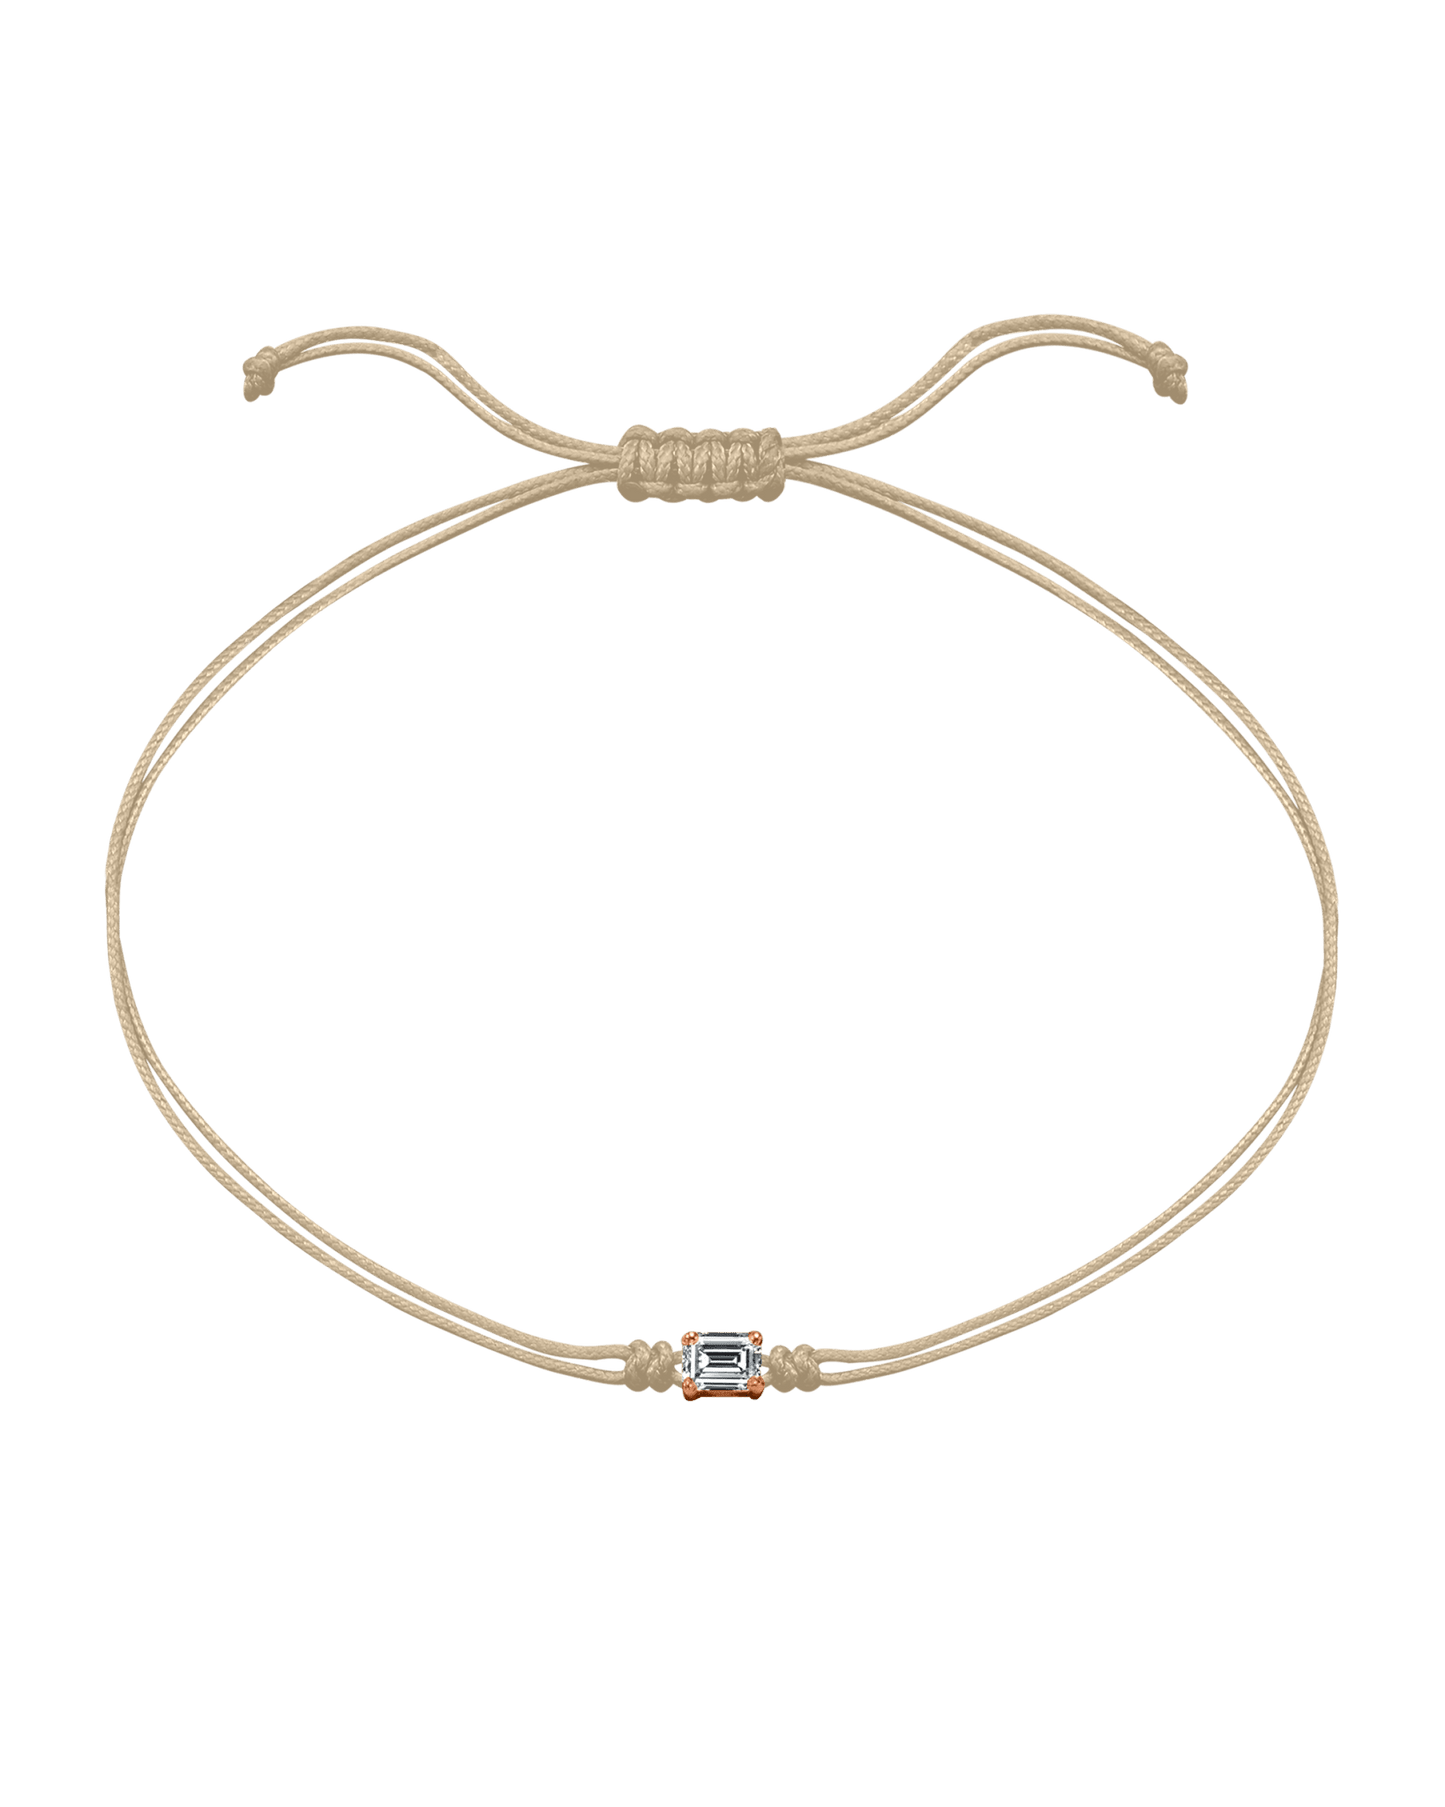 Emerald Diamond String Of Love - 14K Rose Gold Bracelets 14K Solid Gold Beige 